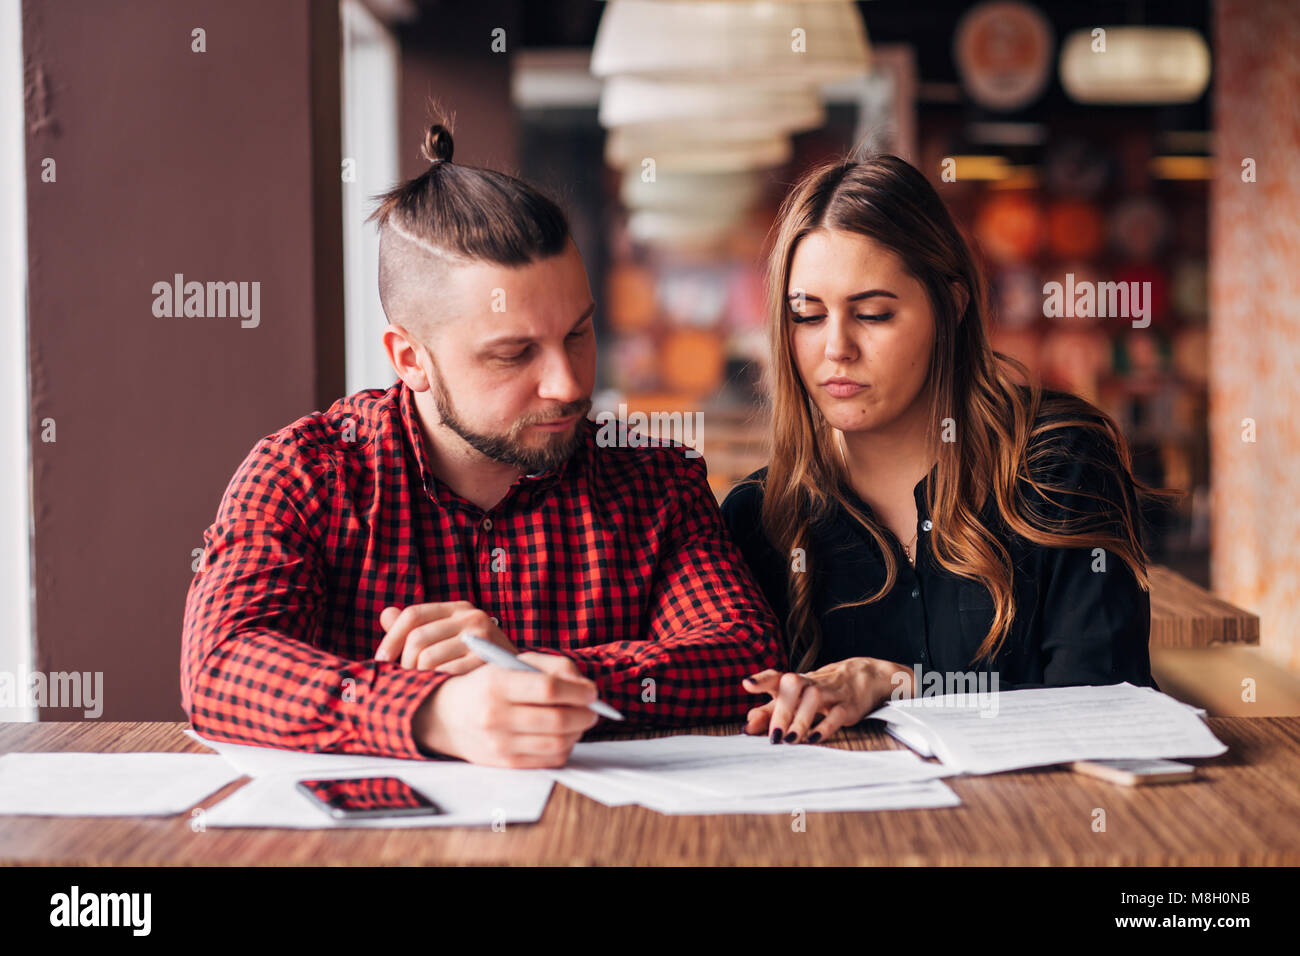 Les jeunes entrepreneurs ont conclu un accord dans un café, la signature de documents Banque D'Images